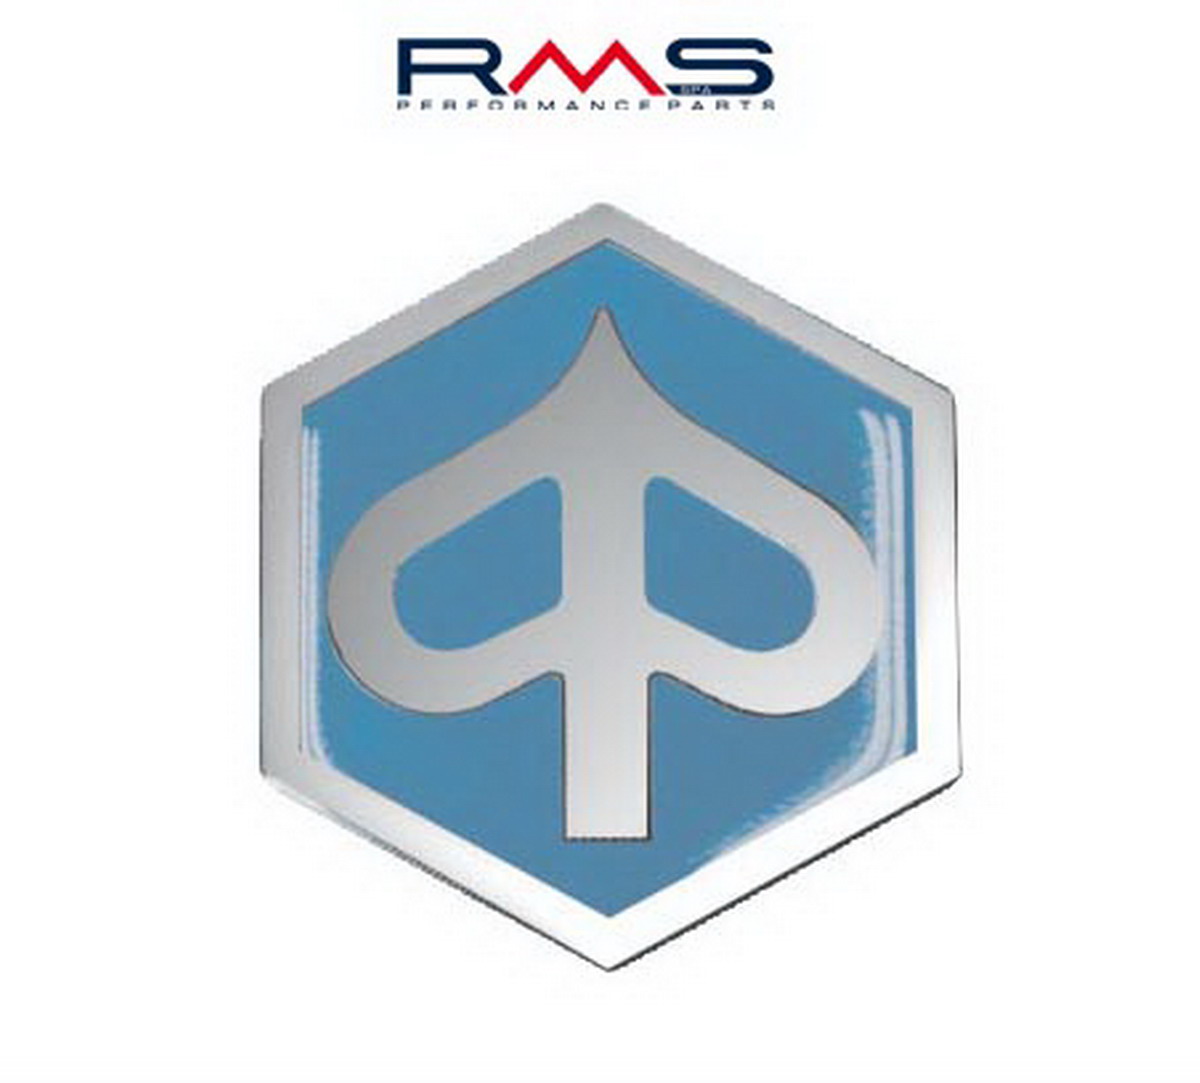 Obrázek produktu Emblém RMS 142720050 32mm na přední štítek 142720050